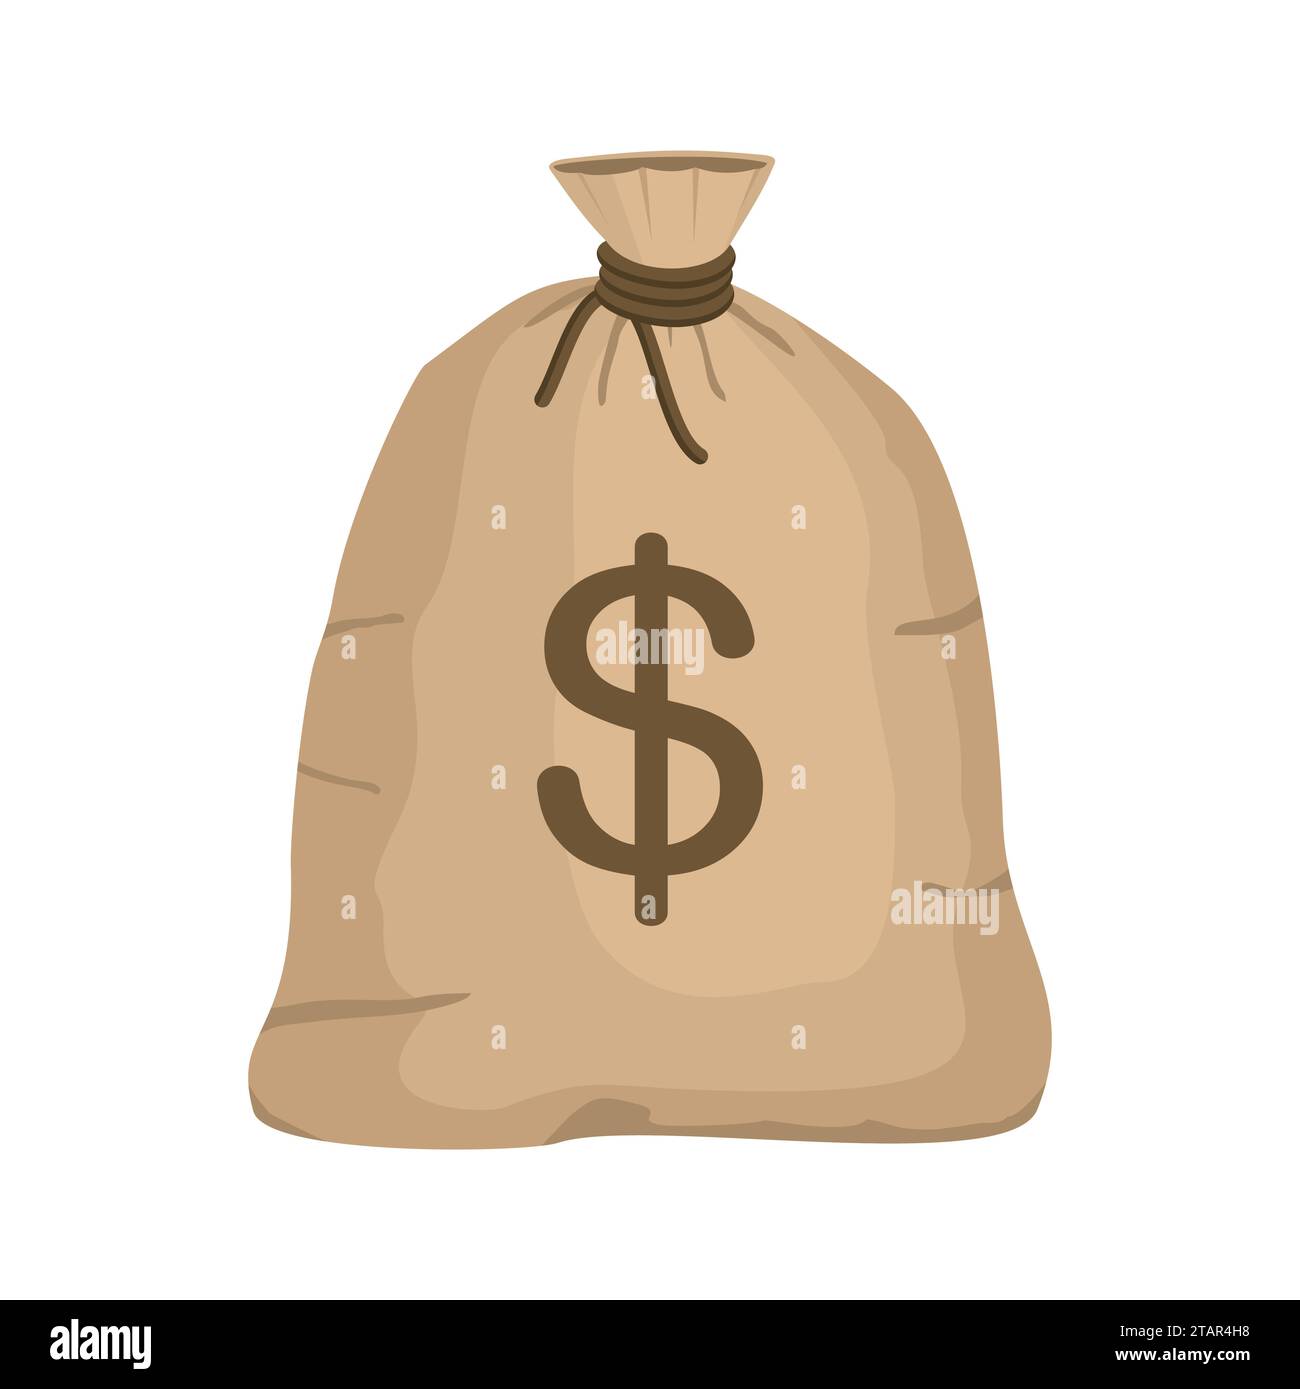 Borsa dei soldi con simbolo del dollaro americano isolato su sfondo bianco. icona a sacco pieno illustrazione vettoriale in stile cartone animato piatto Illustrazione Vettoriale